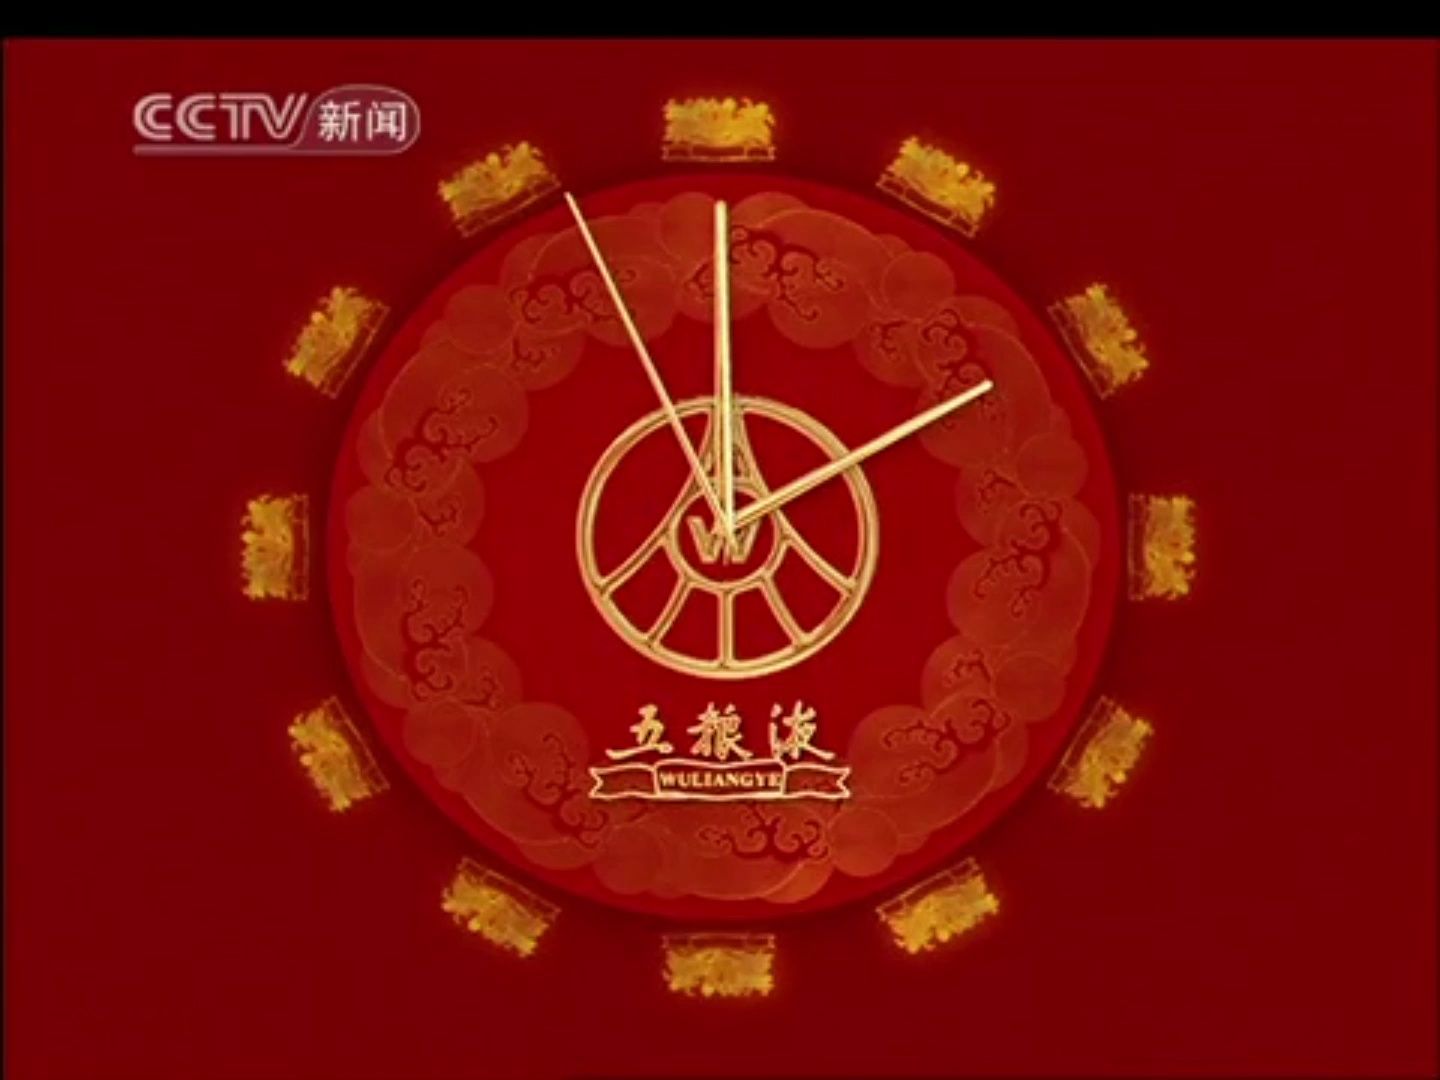 【广播电视】CCTV-新闻 13:00《新闻直播间》部分新闻片段+海洋预报+部分《新闻地图》+结束后广告+《真诚沟通》+《生活提示》（2010.8.24）